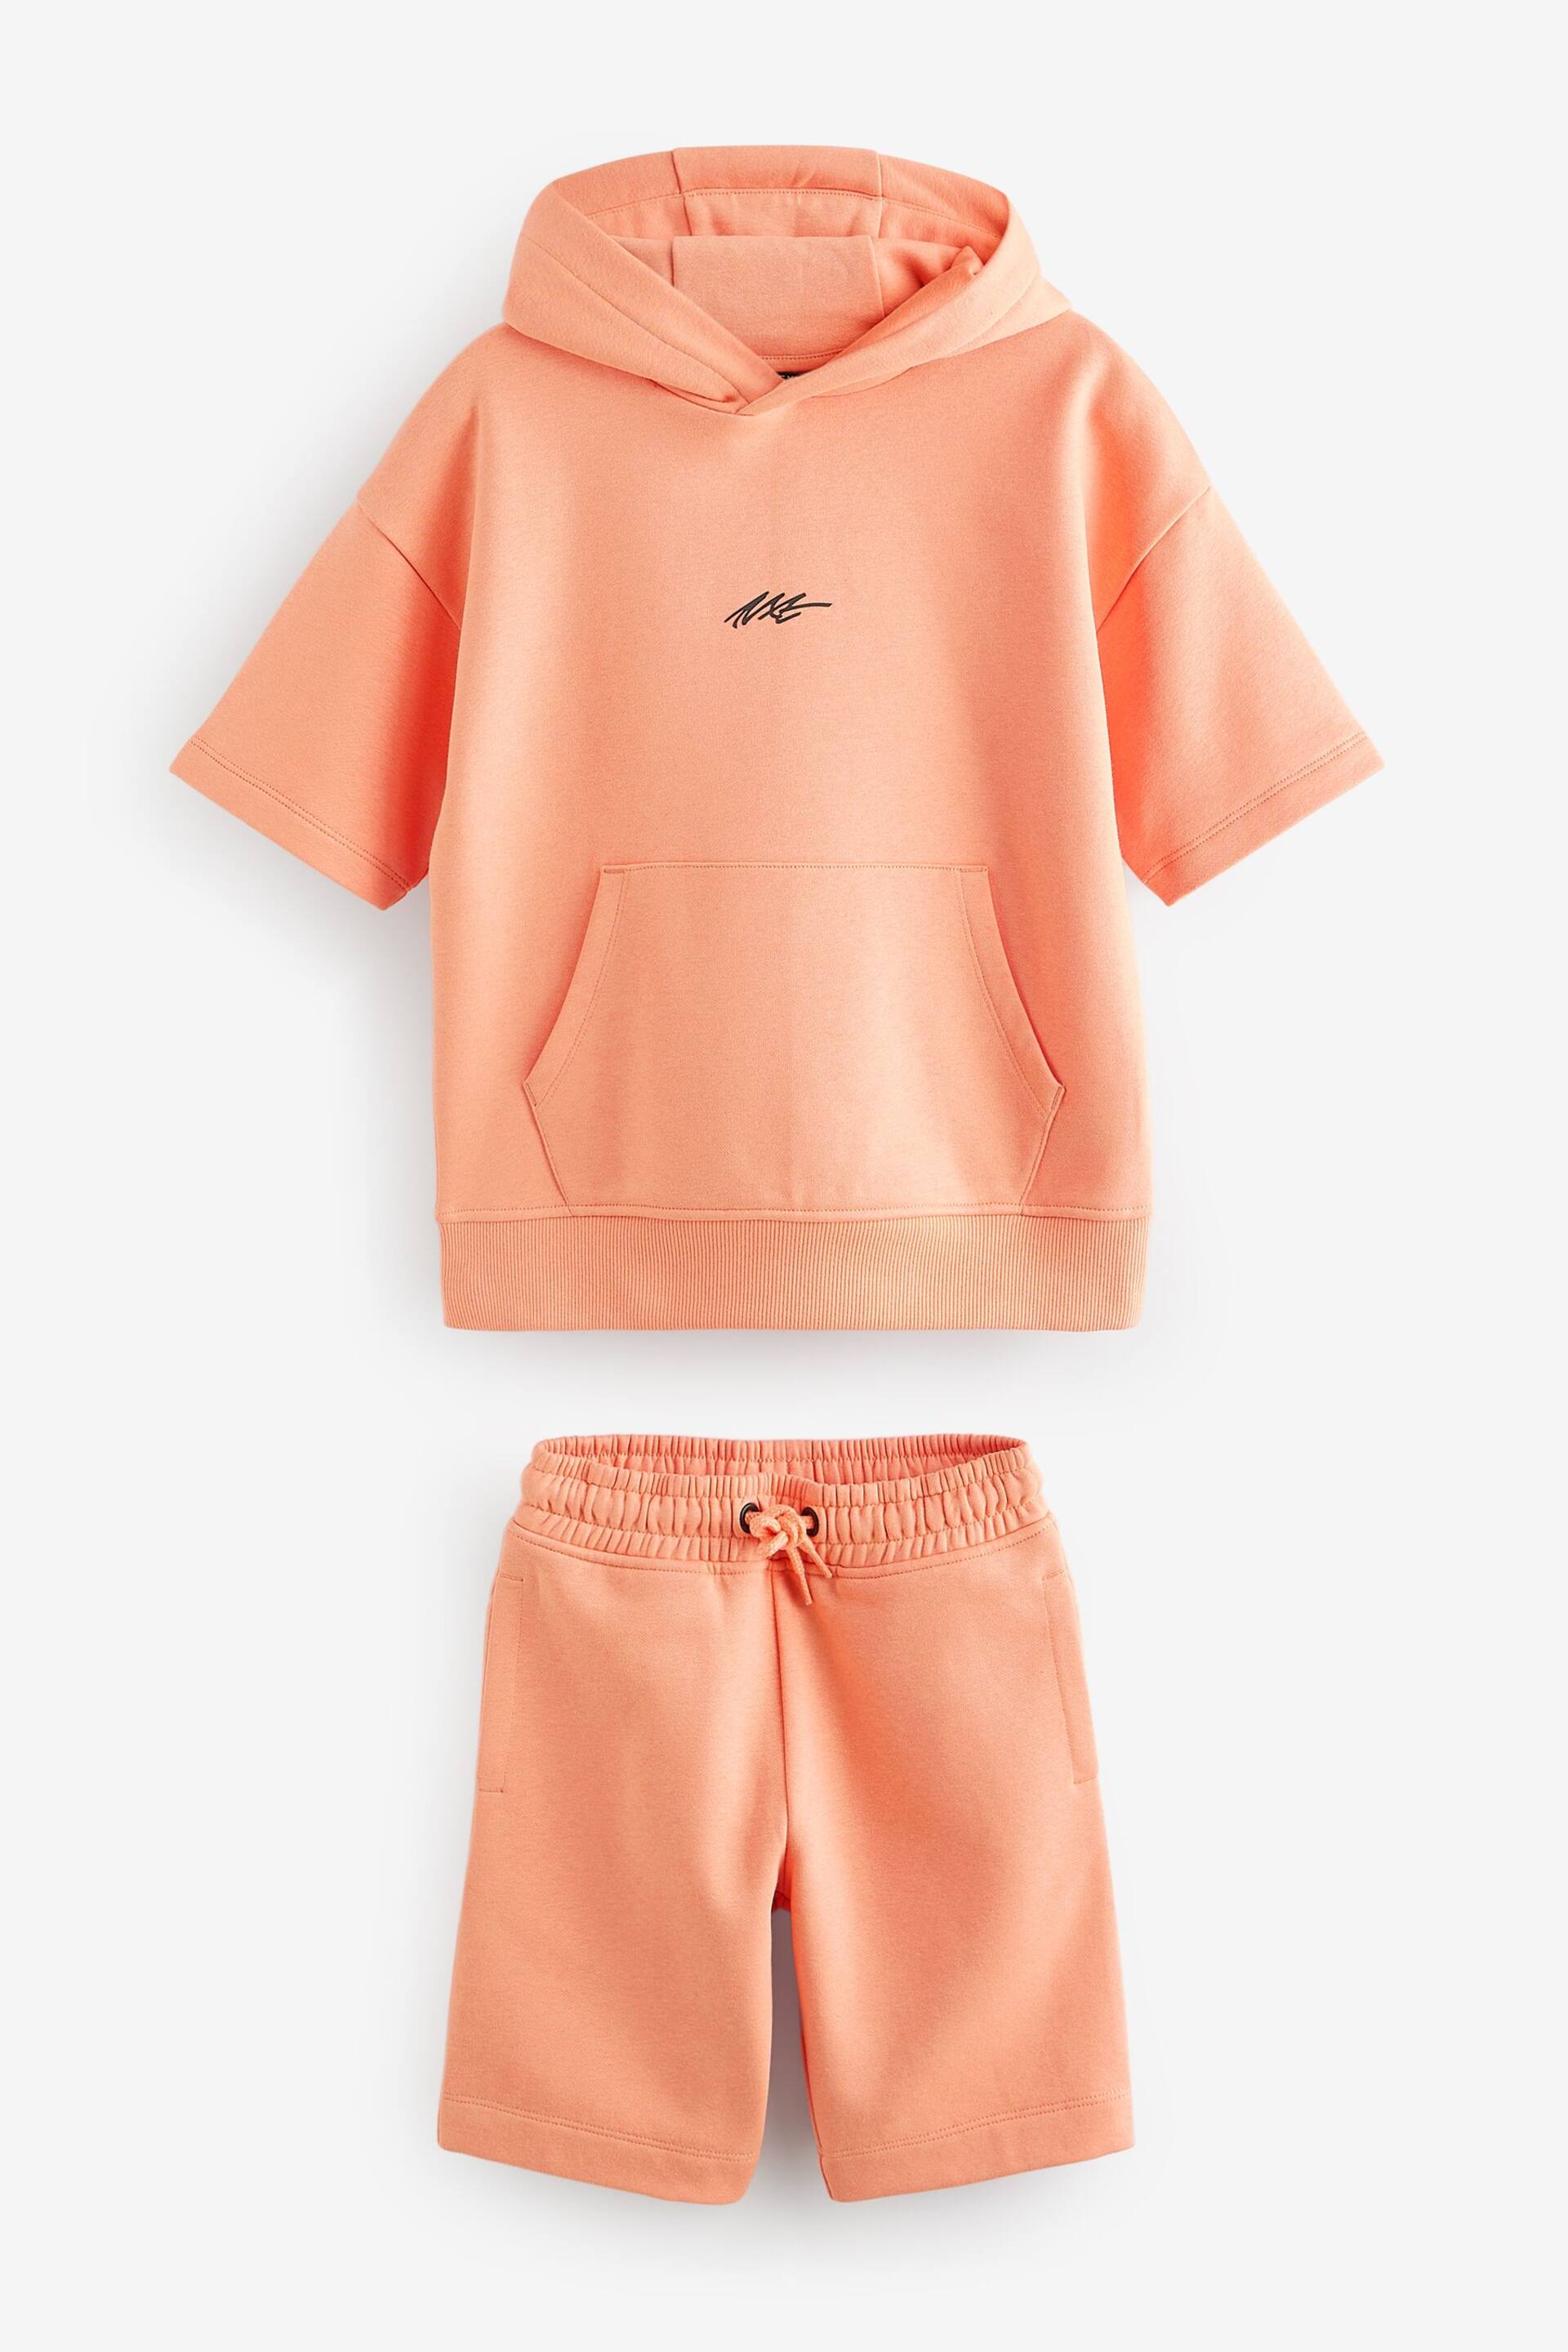 Orange Short Sleeve Hoodie and Shorts Set (3-16yrs) - Image 4 of 6